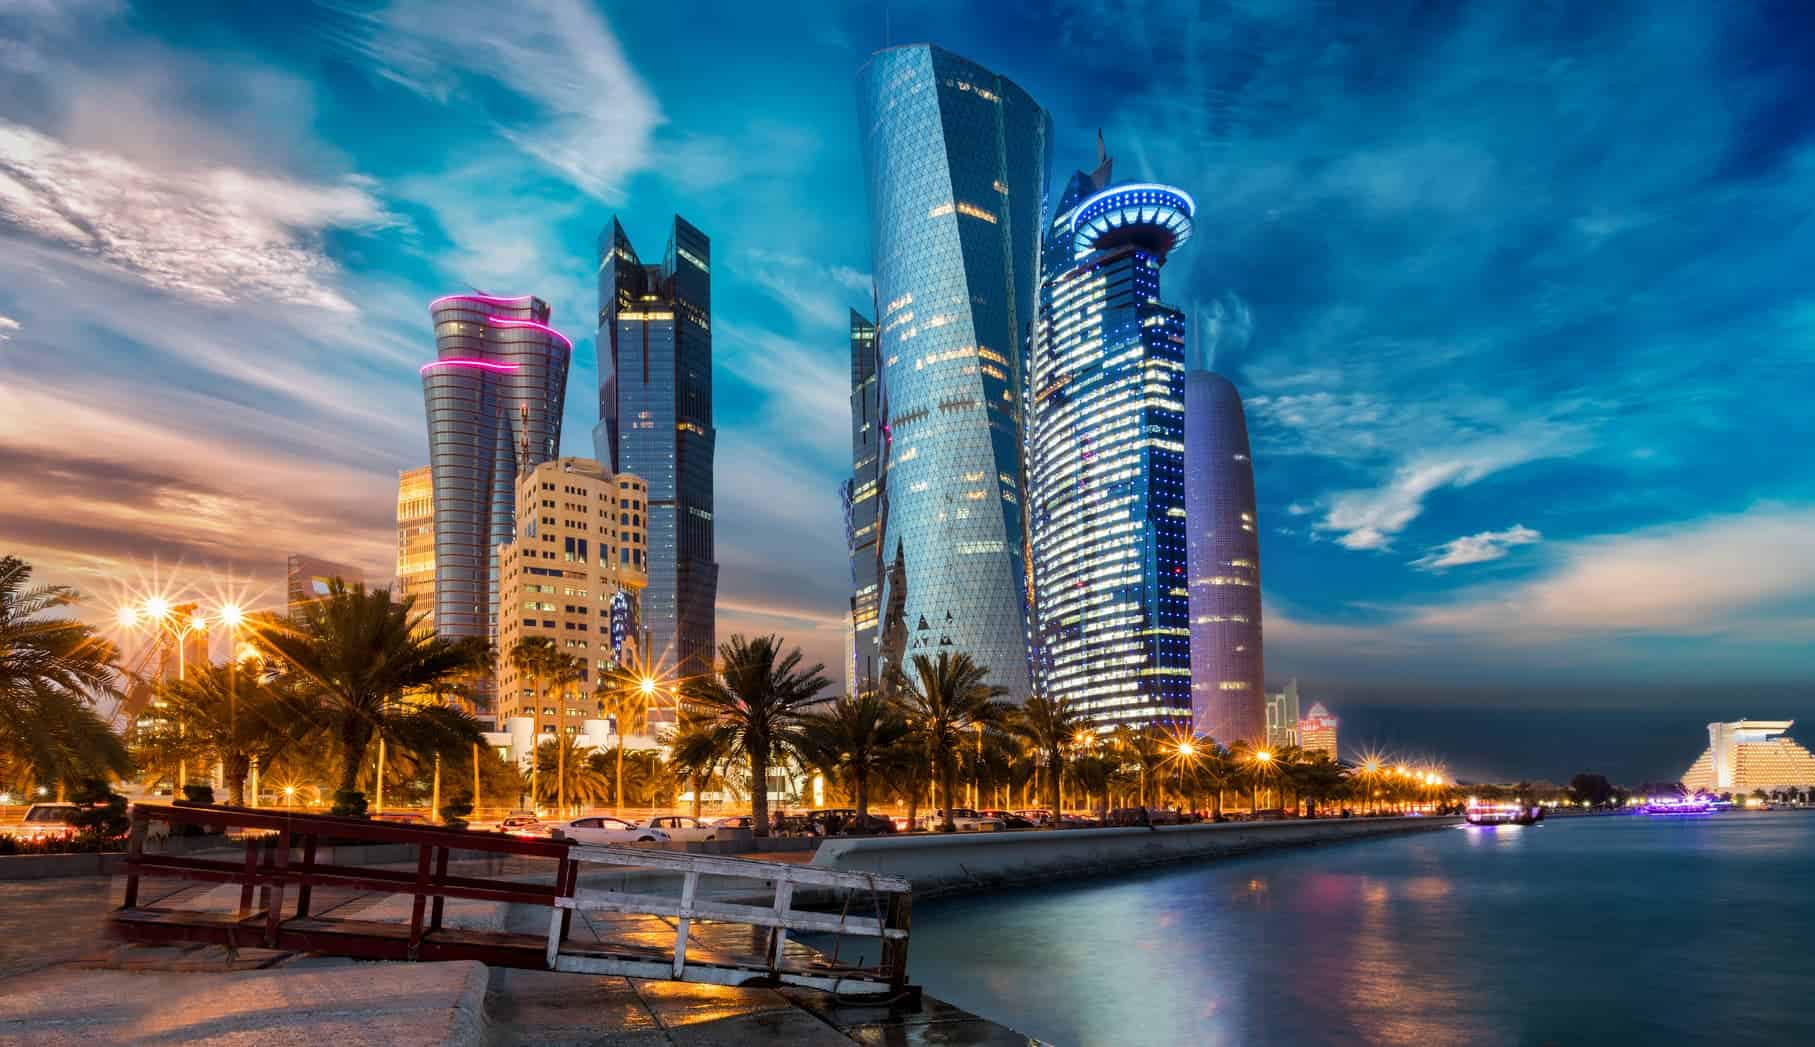 Qatar Airways Stopover In Doha Fur 25 Im 5 Sterne Hotel Ubernachten Travel Dealz De